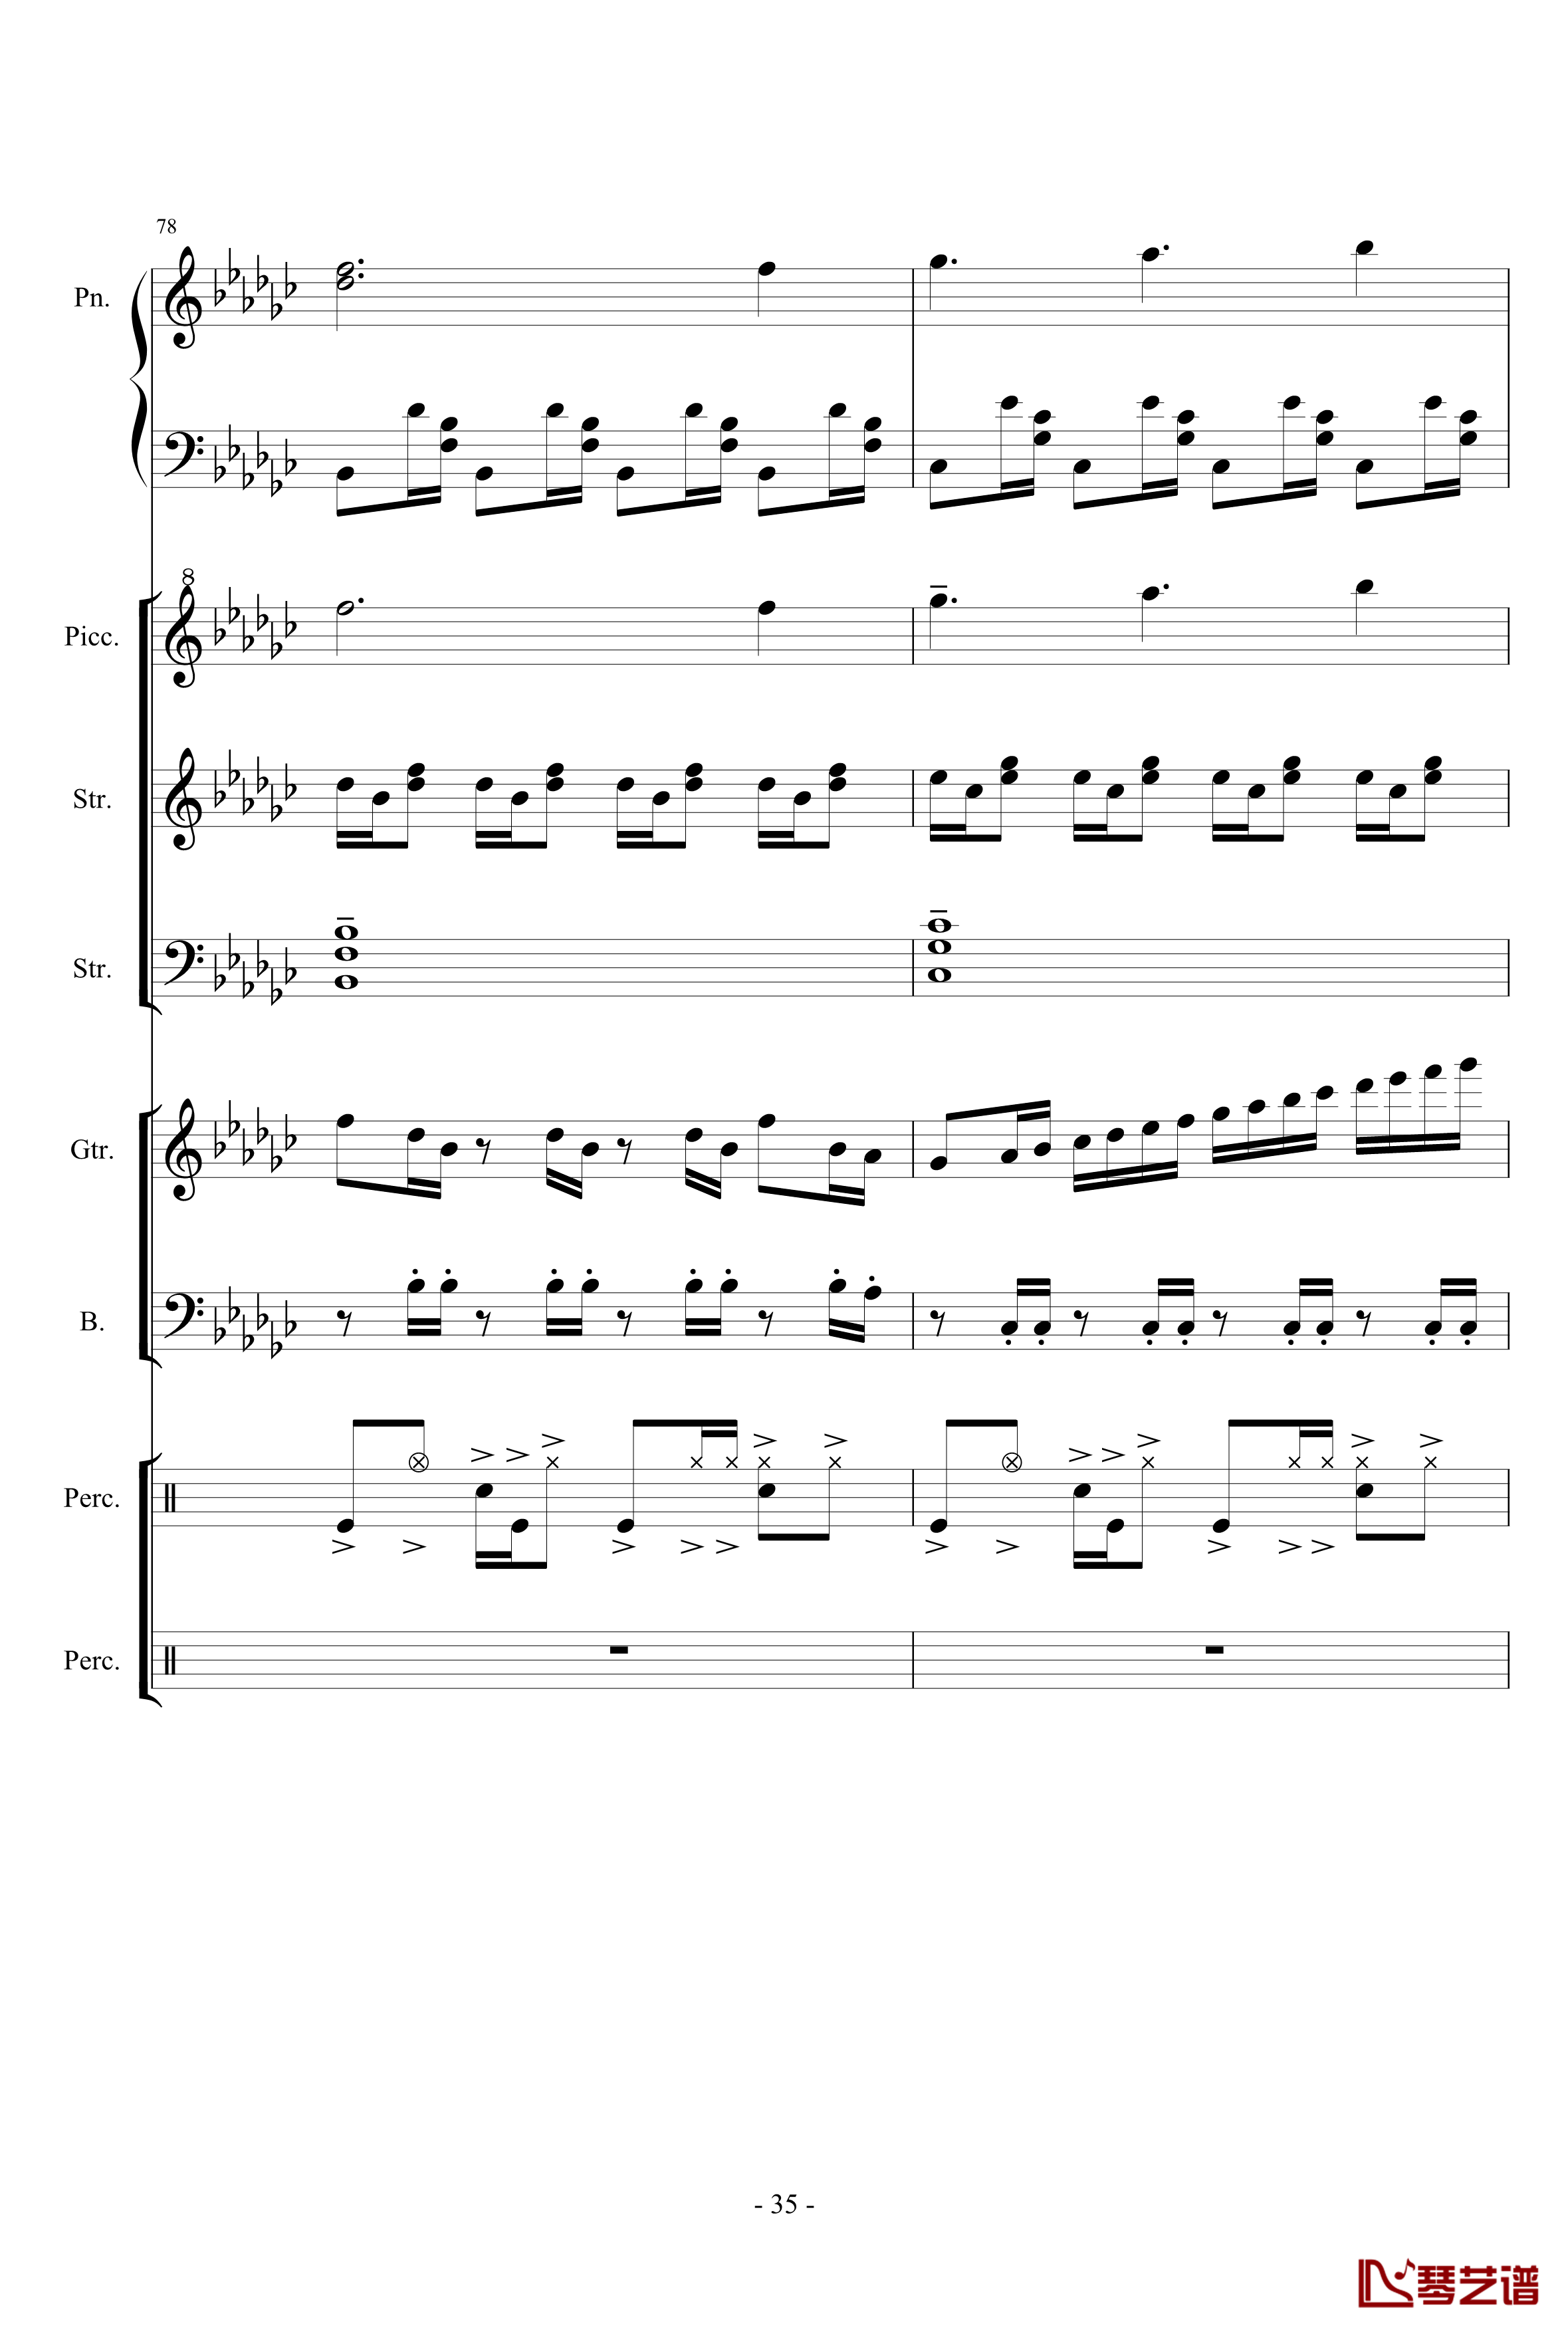 幻想世界之音2钢琴谱-lujianxiang555